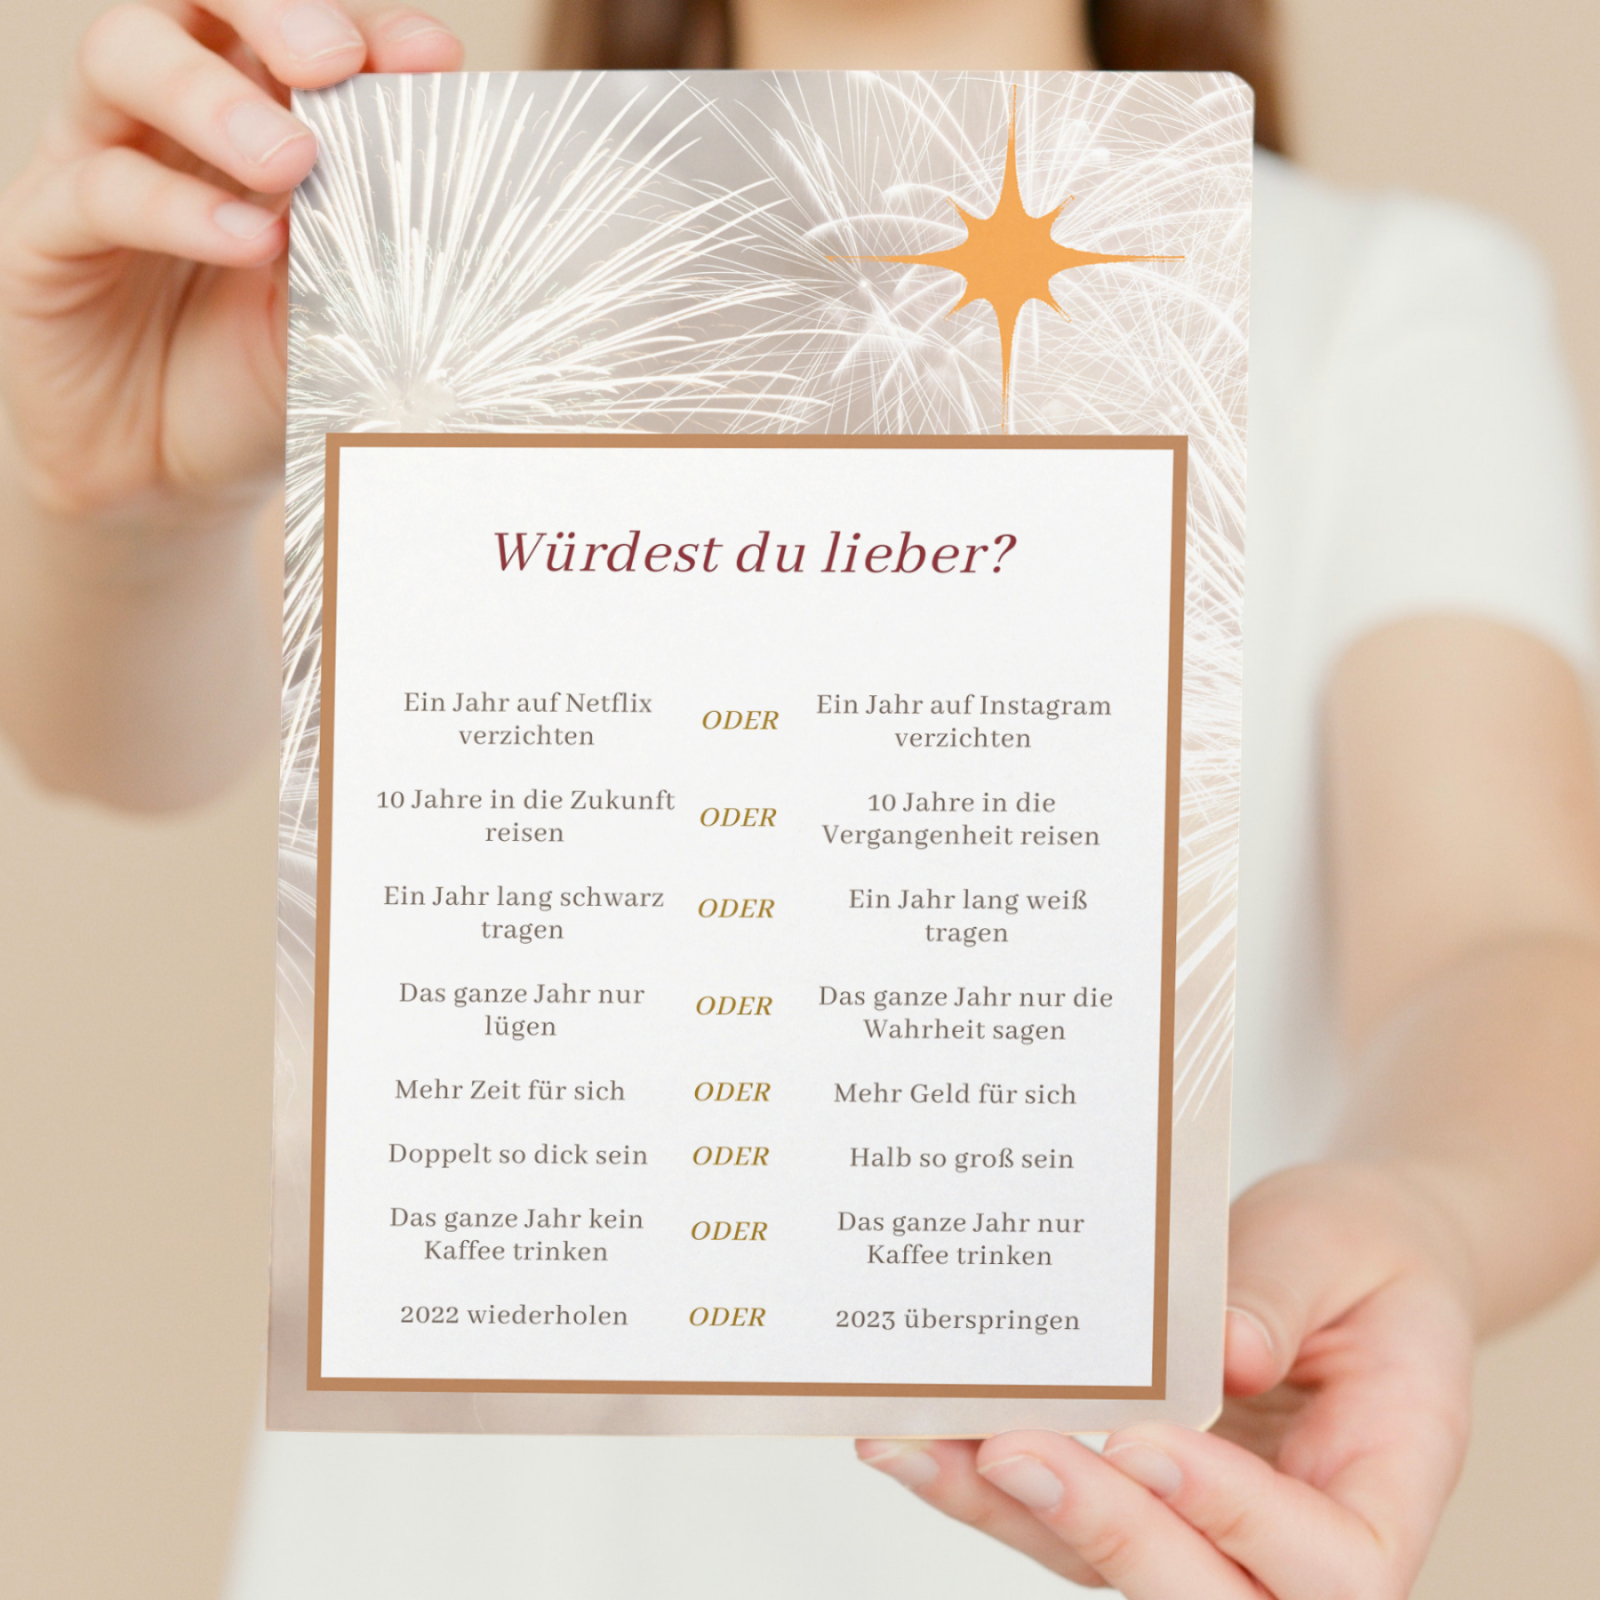 Partyspiel Würdest du lieber Silvesteredition - lustiges Spiel zum Download PDF Datei 2